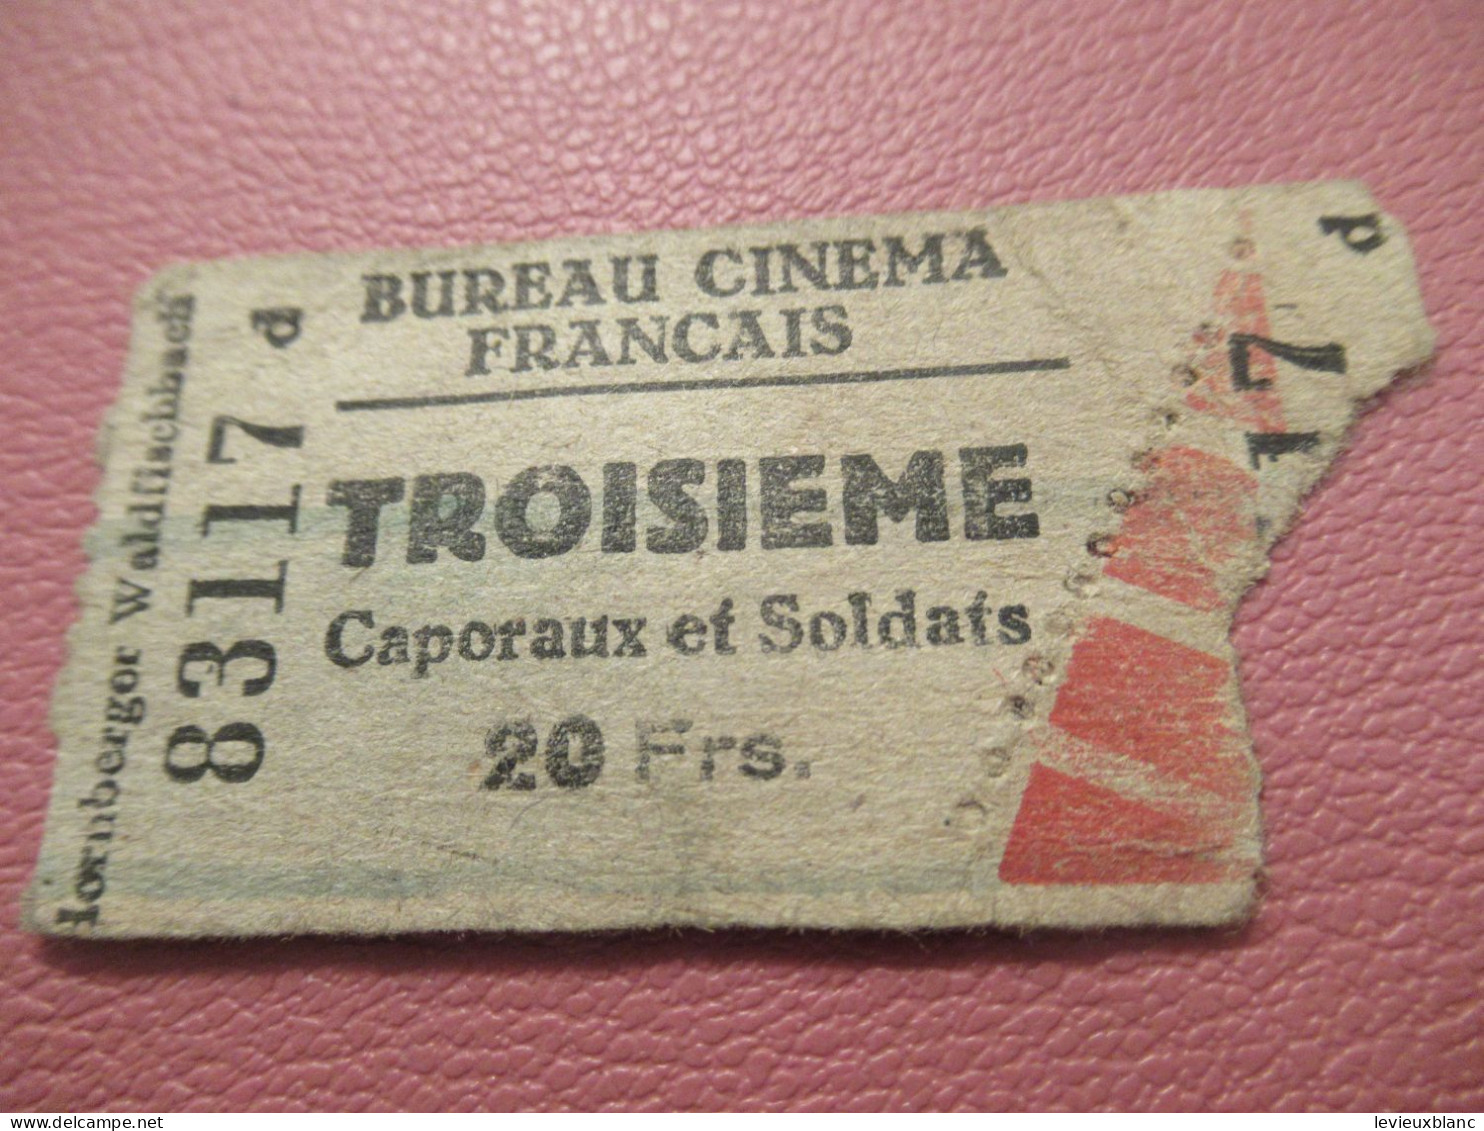 France / BUREAU CINEMA FRANCAIS/Troisième/ Caporaux Et Soldats /Lornberger Waldfischbach /1939-1945     TCK277 - Toegangskaarten